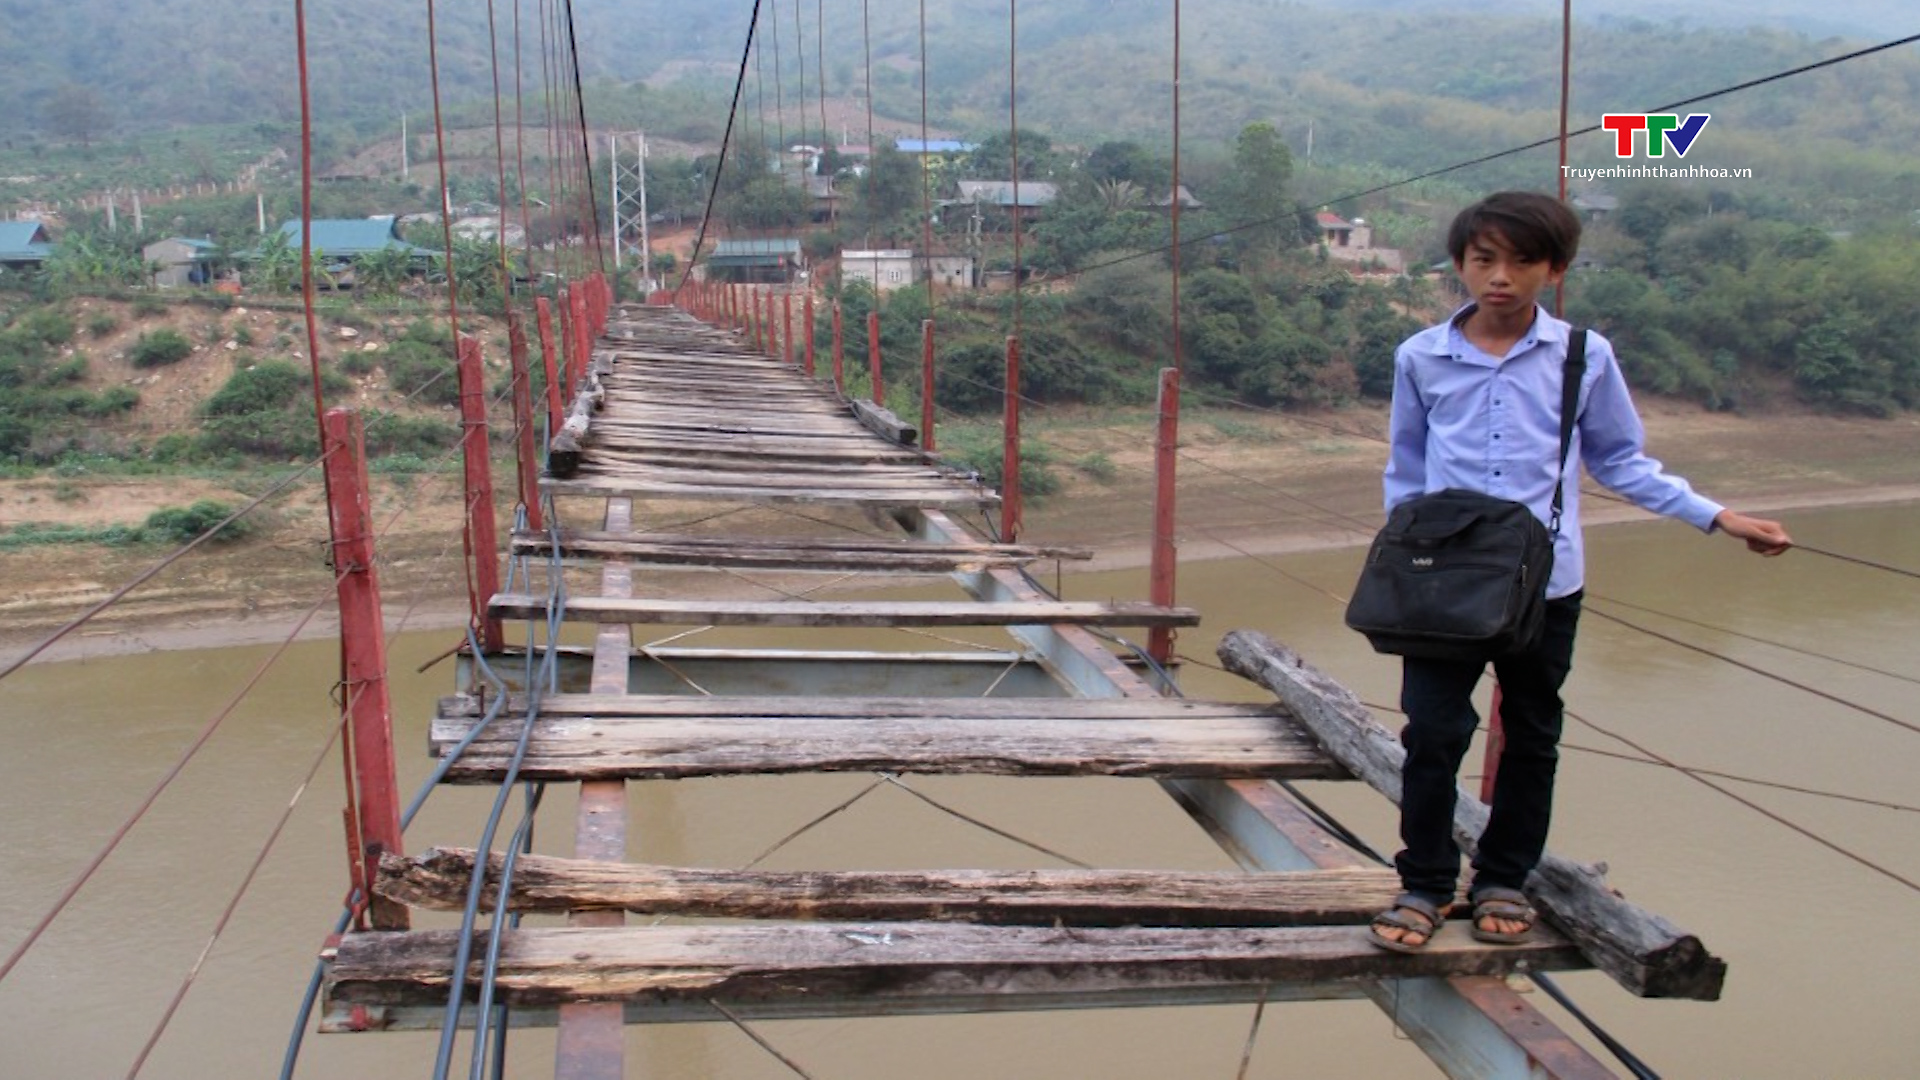 Thiếu kinh phí, 2 cầu treo hư hỏng trên địa bàn huyện Mường Lát chưa thể tháo dỡ- Ảnh 1.